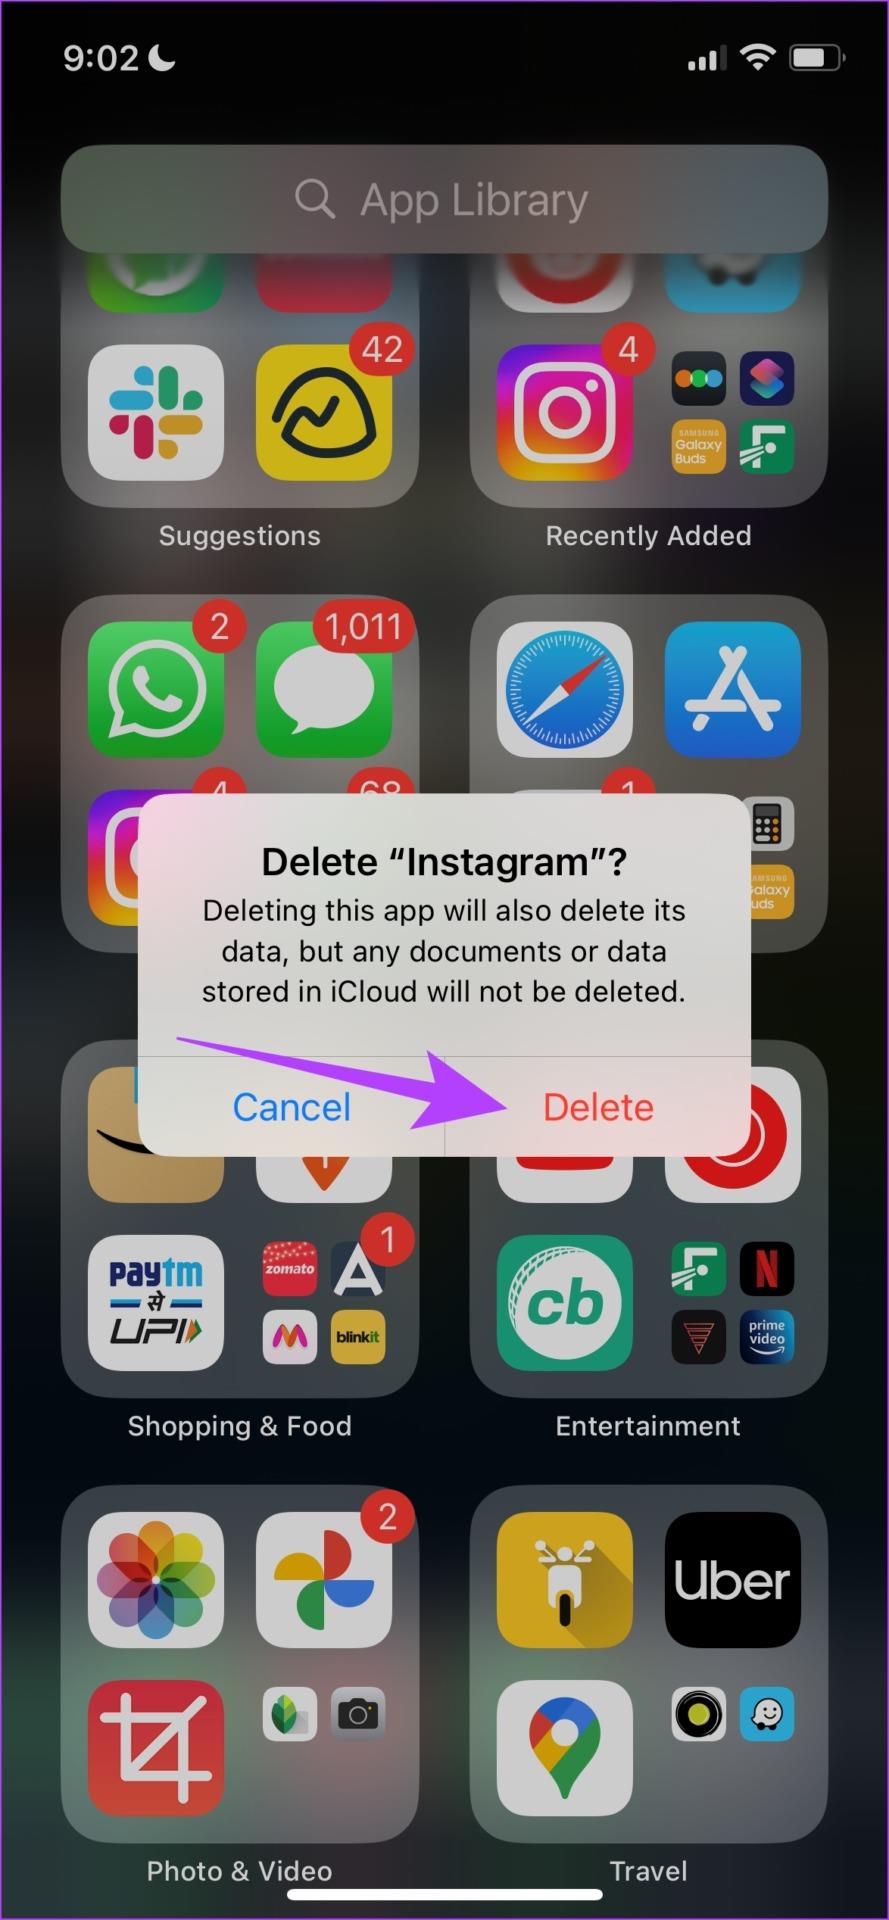 Eine vollständige Anleitung zum Beheben nicht gesendeter Instagram-Nachrichten